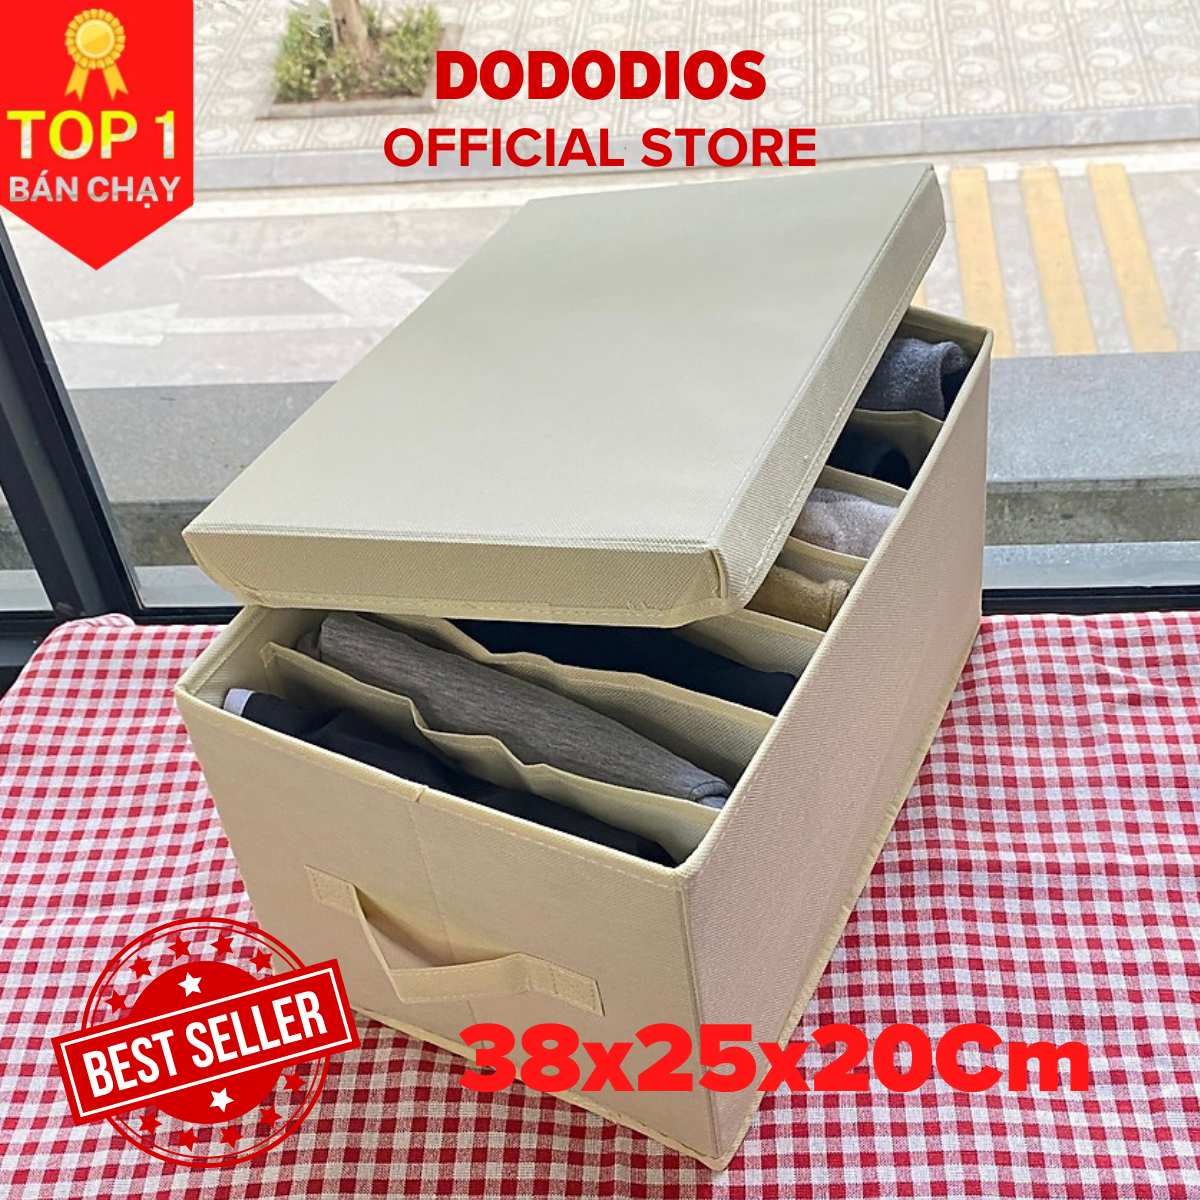 Bộ 2 hộp đựng đồ chia 7 ngăn sắp xếp quần áo dododios - Hộp vải đa năng HQ2 tiện ích, chất liệu cao cấp, phong cách Nhật Bản sang trọng